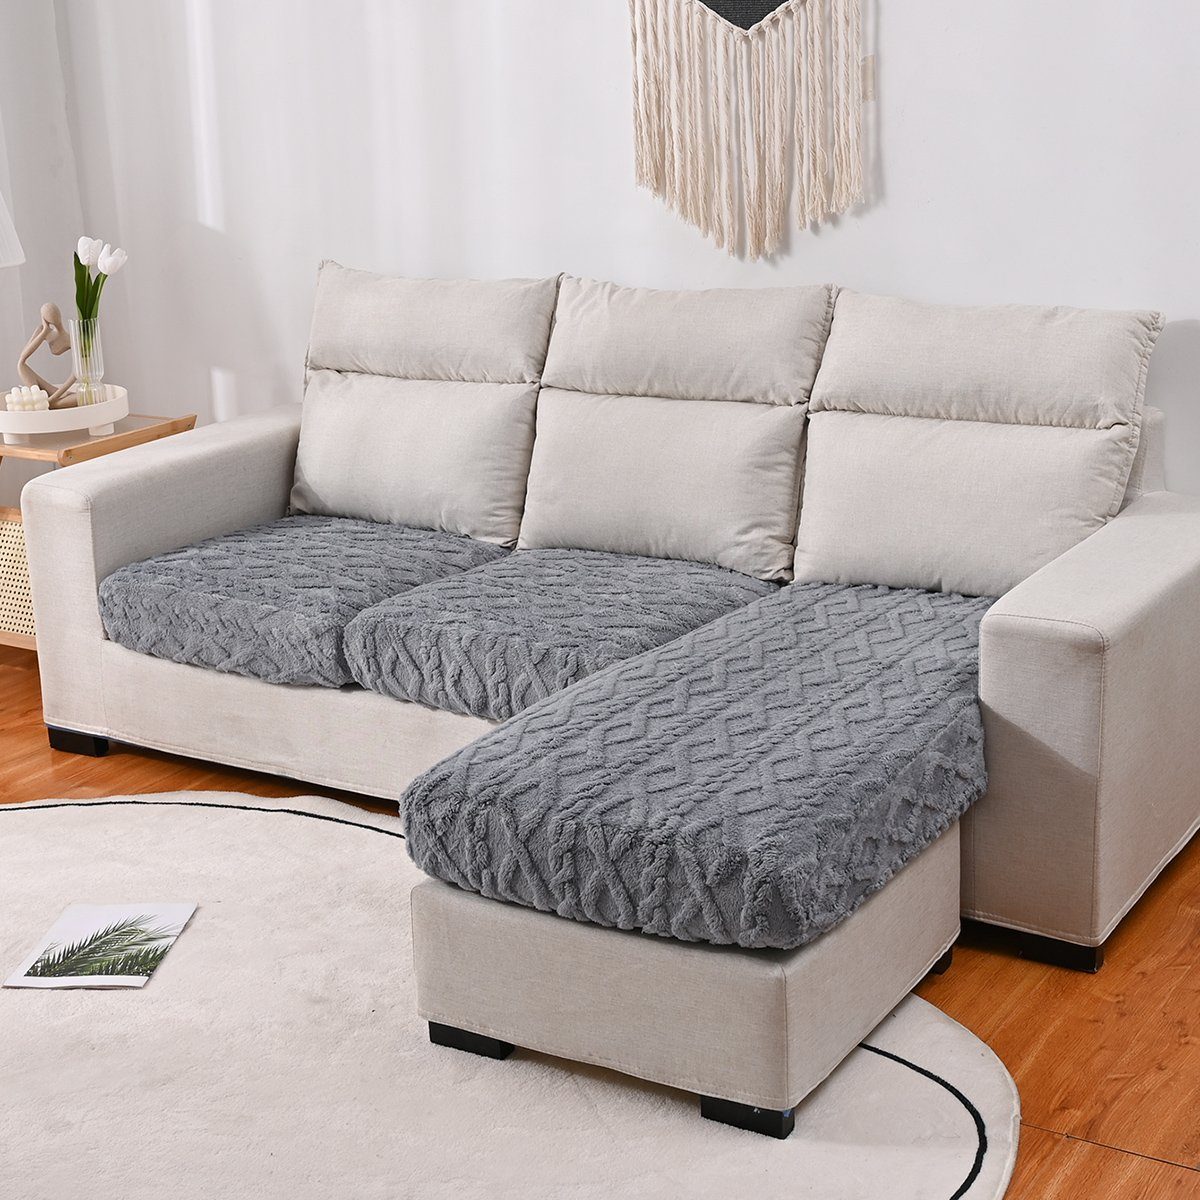 Sofahusse, HOMEIDEAS, Sofabezug L Form elastisch, Couch überzug